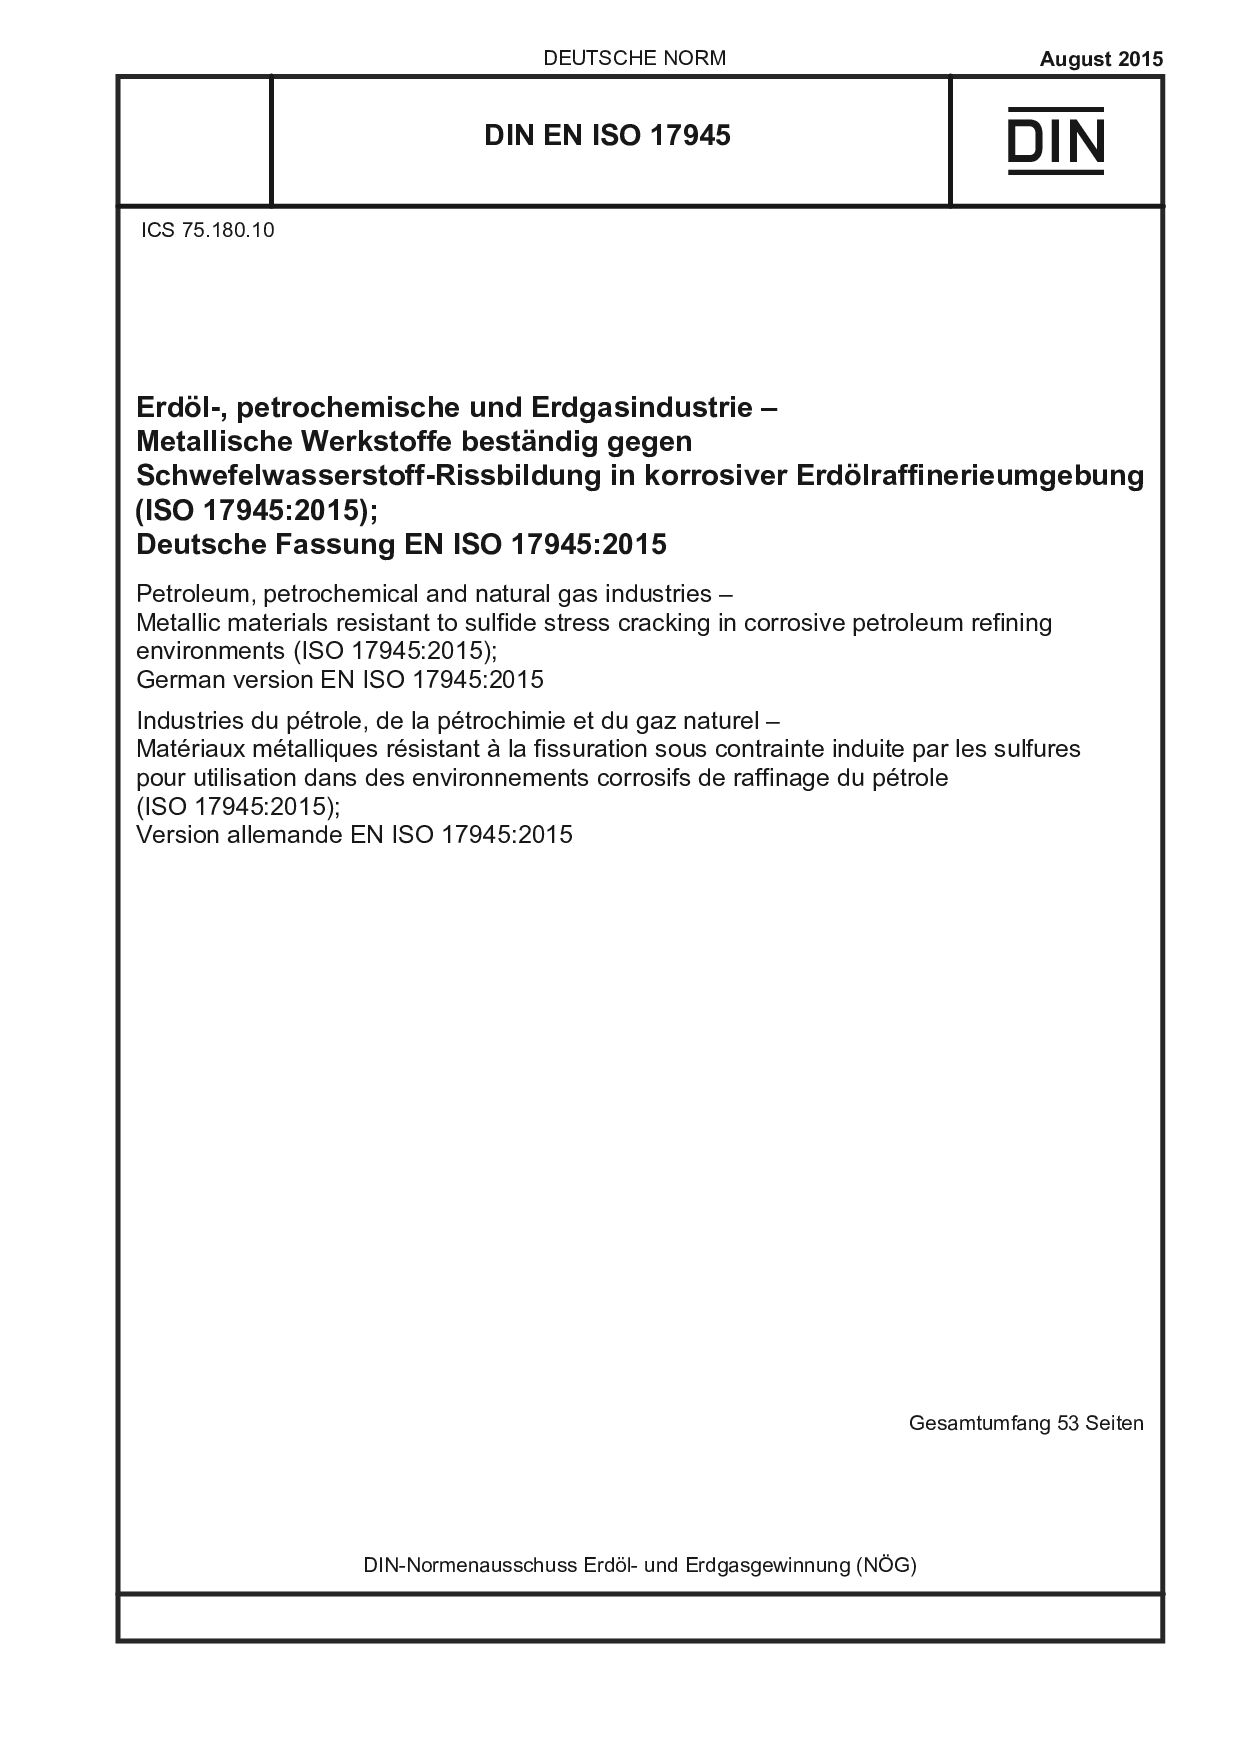 DIN EN ISO 17945:2015封面图